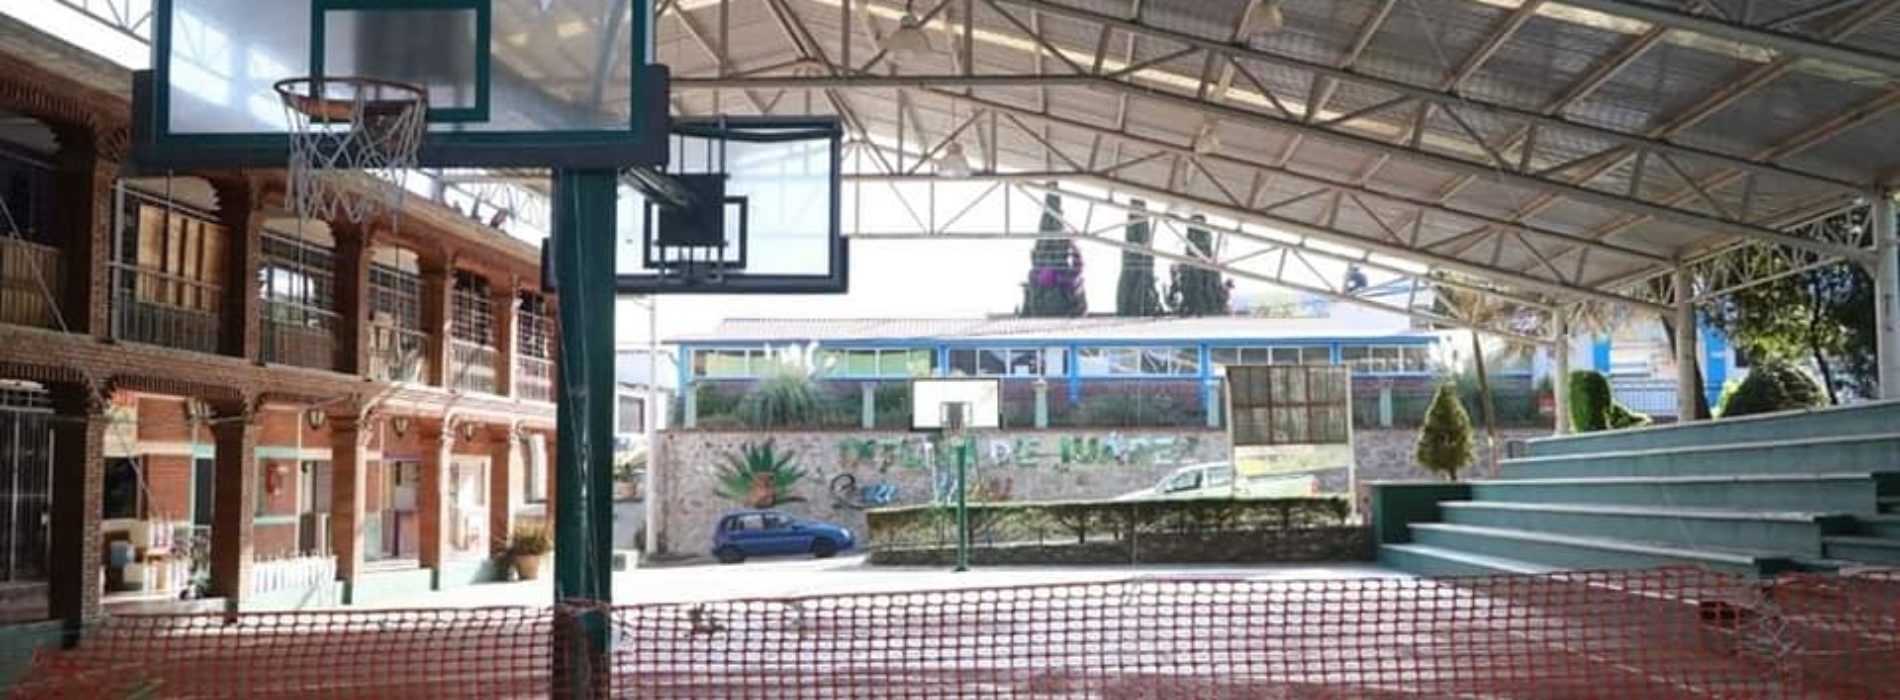 La NBA llega a Ixtlán de Juárez con la iniciativa de remodelación de canchas por su 75 aniversario